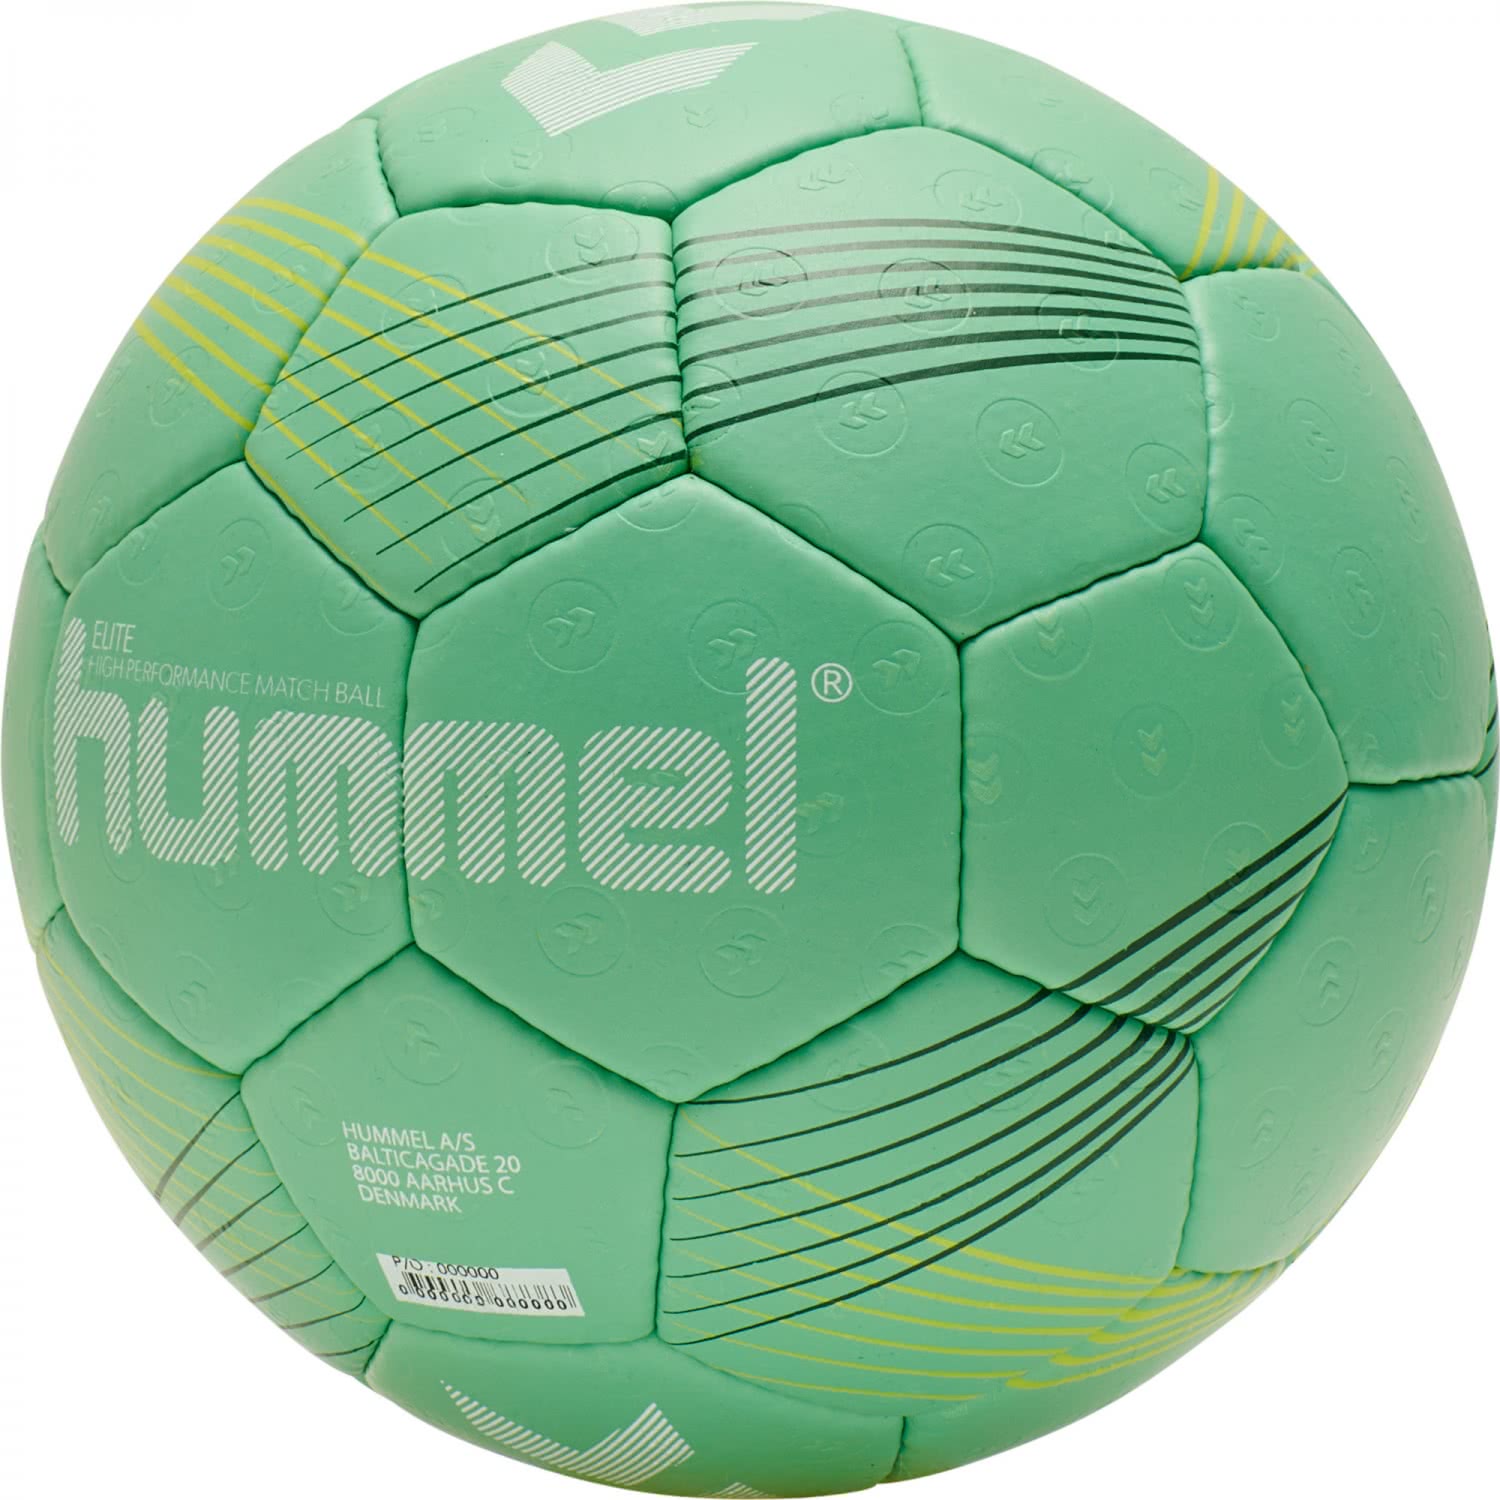 Hummel Handball ELITE HB 212549 | eBay